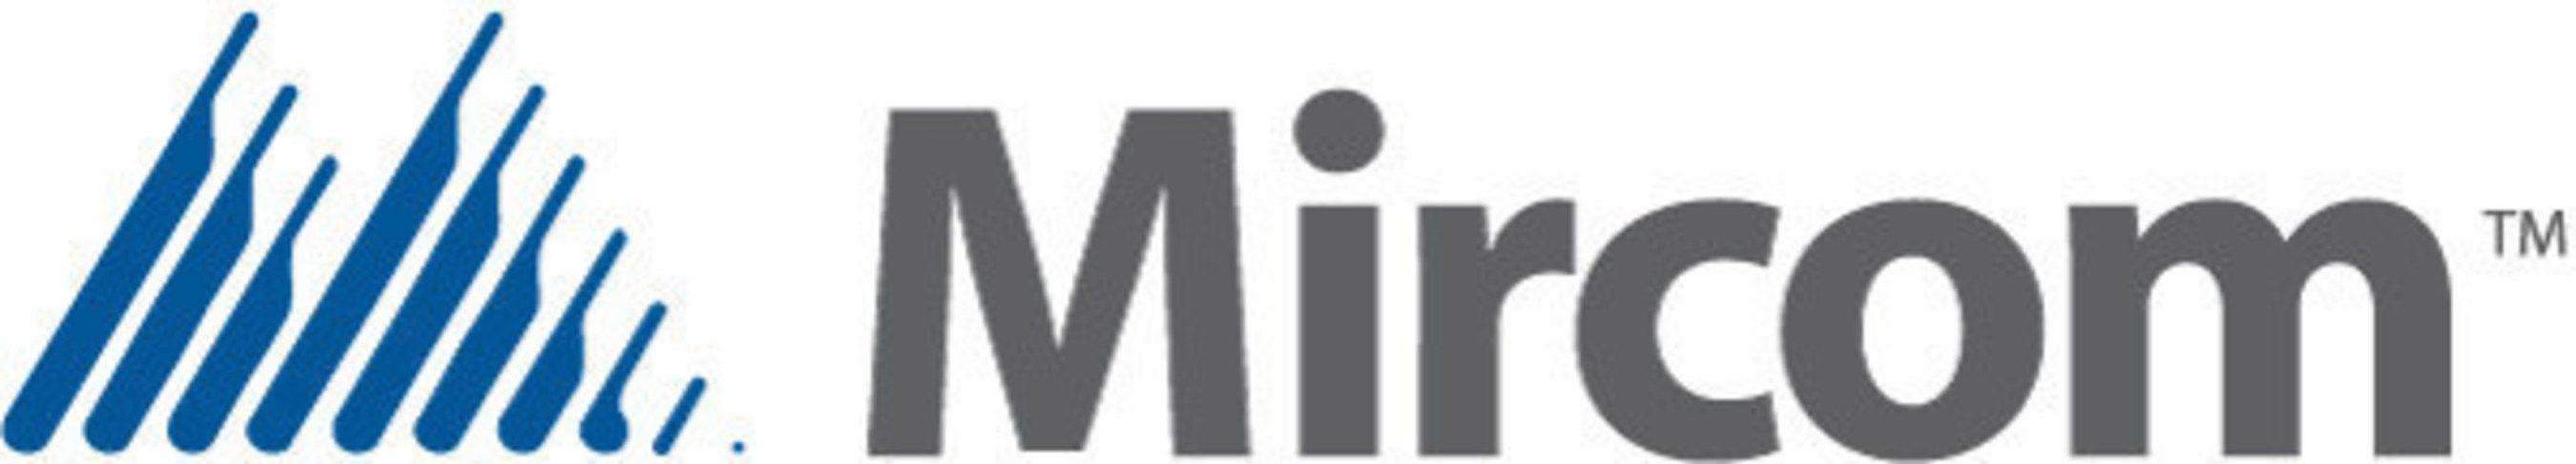 Mircom Logo - Mircom Logos